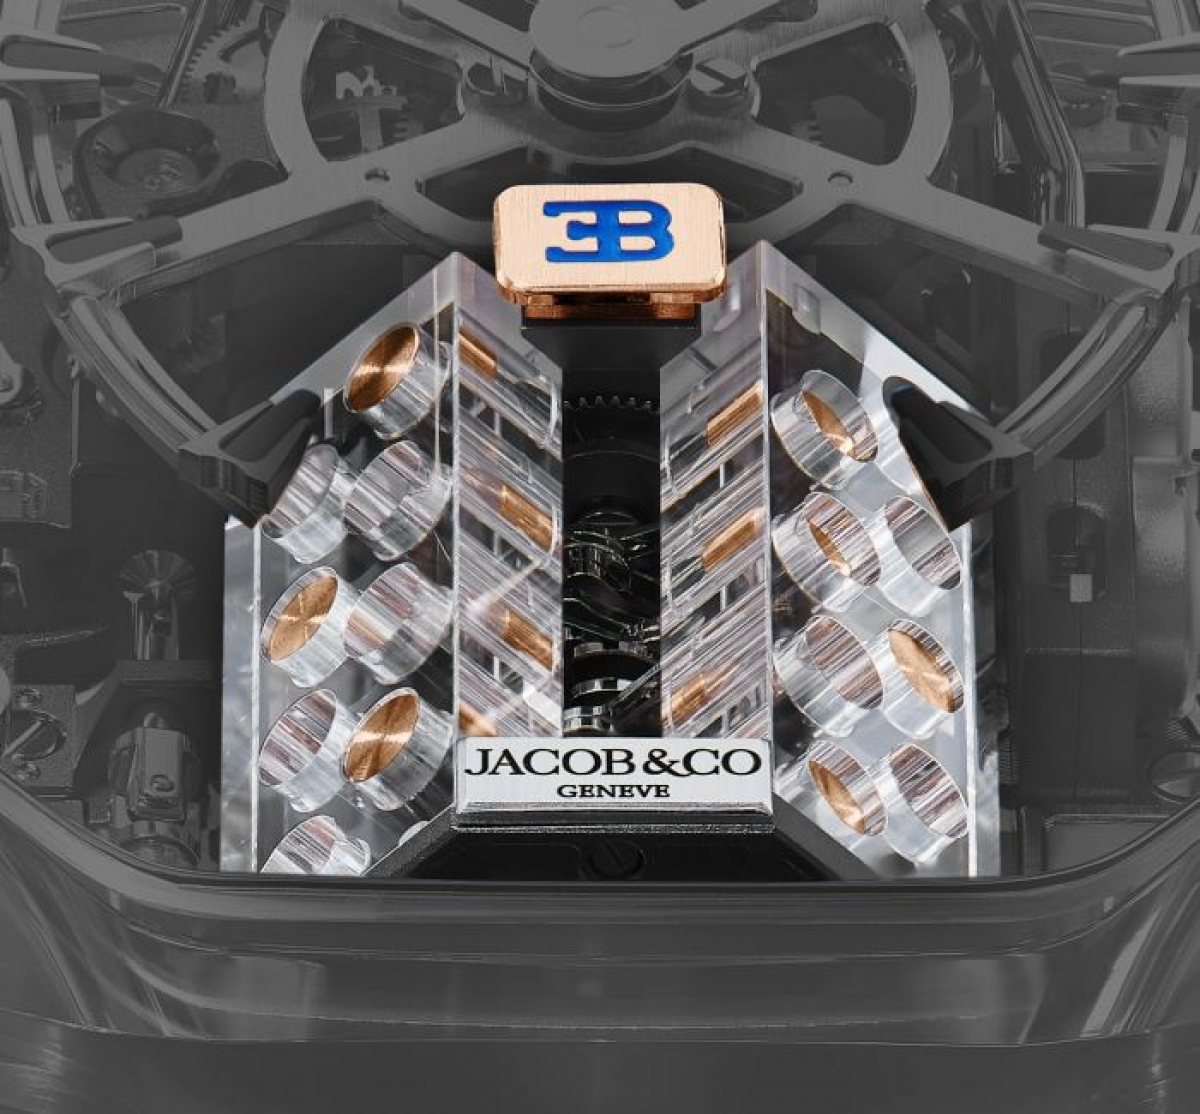 Chiêm ngưỡng mẫu đồng hồ giá 1,5 triệu USD của Bugatti và Jacob & Co - Ảnh 4.